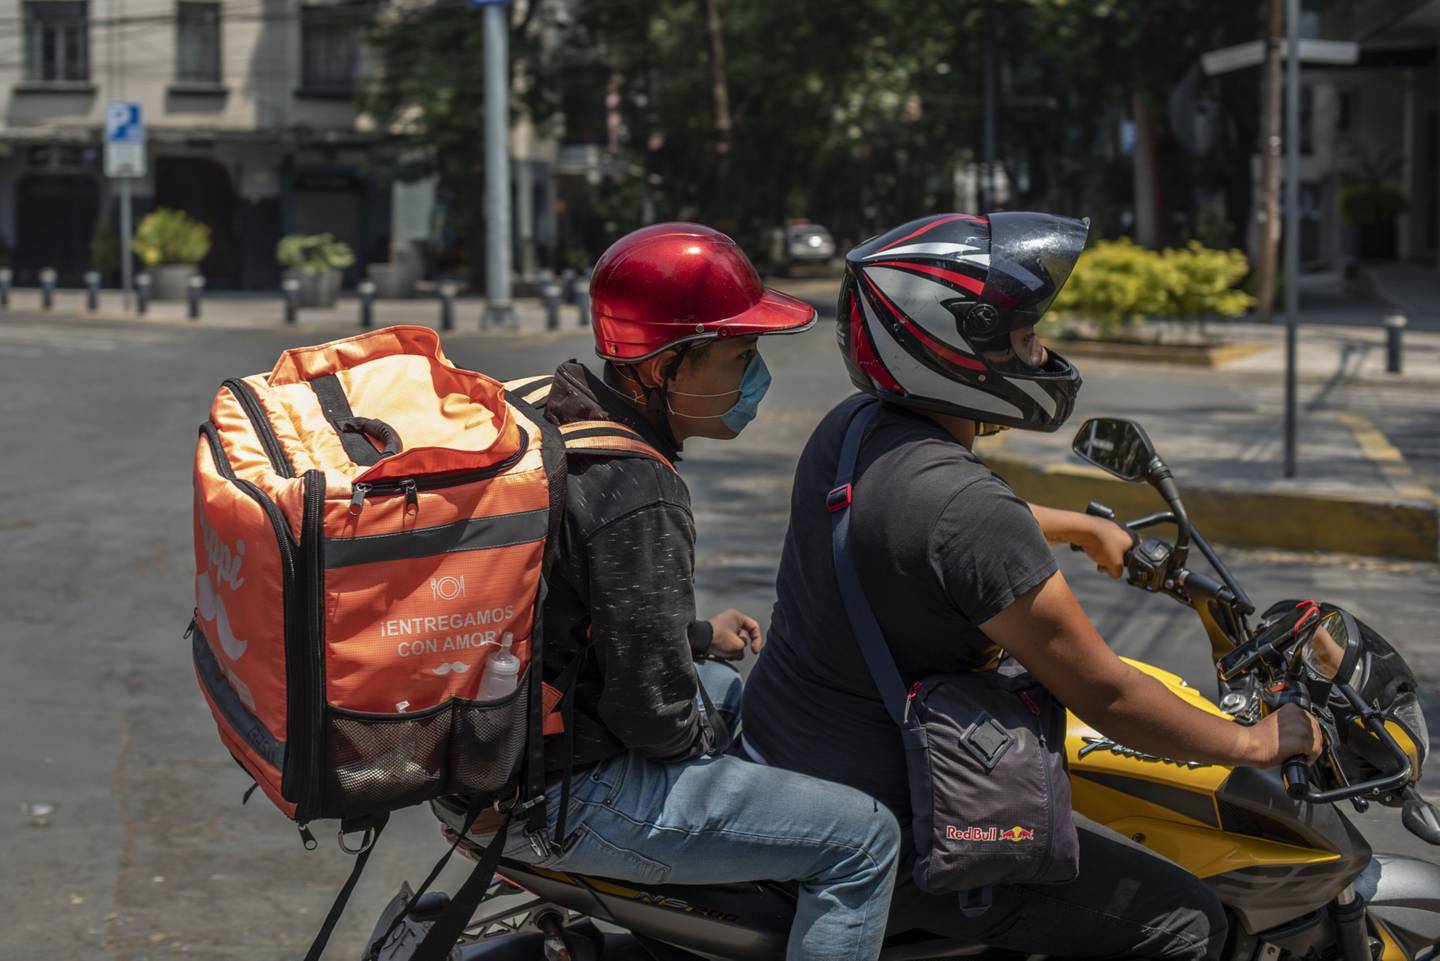 Un trabajador con una máscara protectora conduce una motocicleta mientras realiza una entrega de la aplicación Rappi en Ciudad de México, el viernes 3 de abril de 2020.